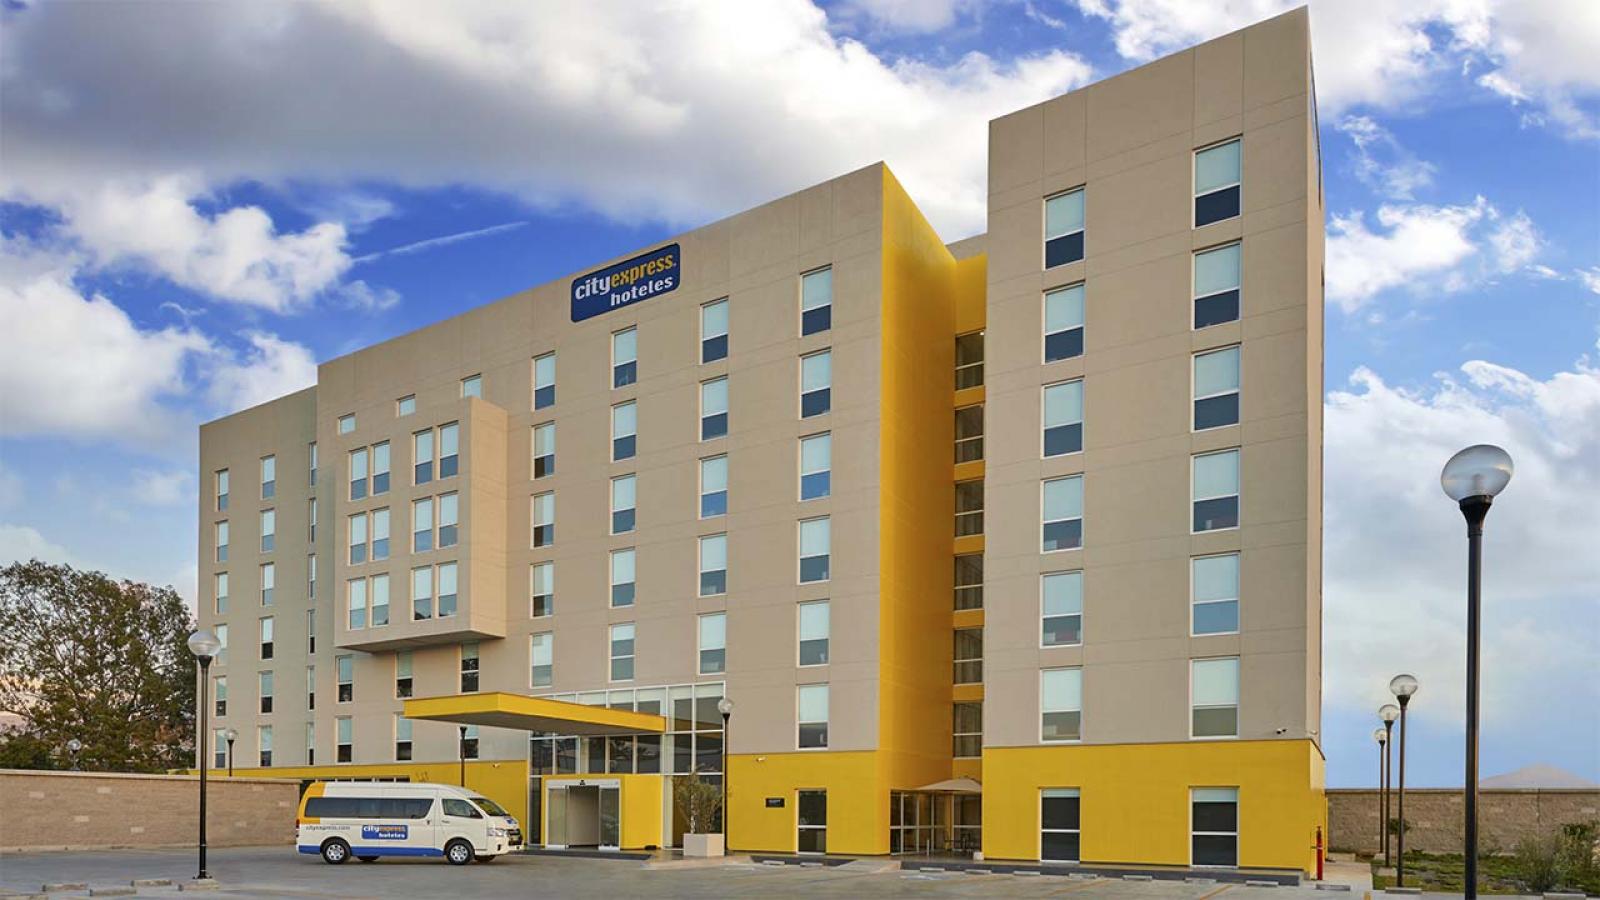 City Express abre su quinto hotel en Sonora - Guaymas 1